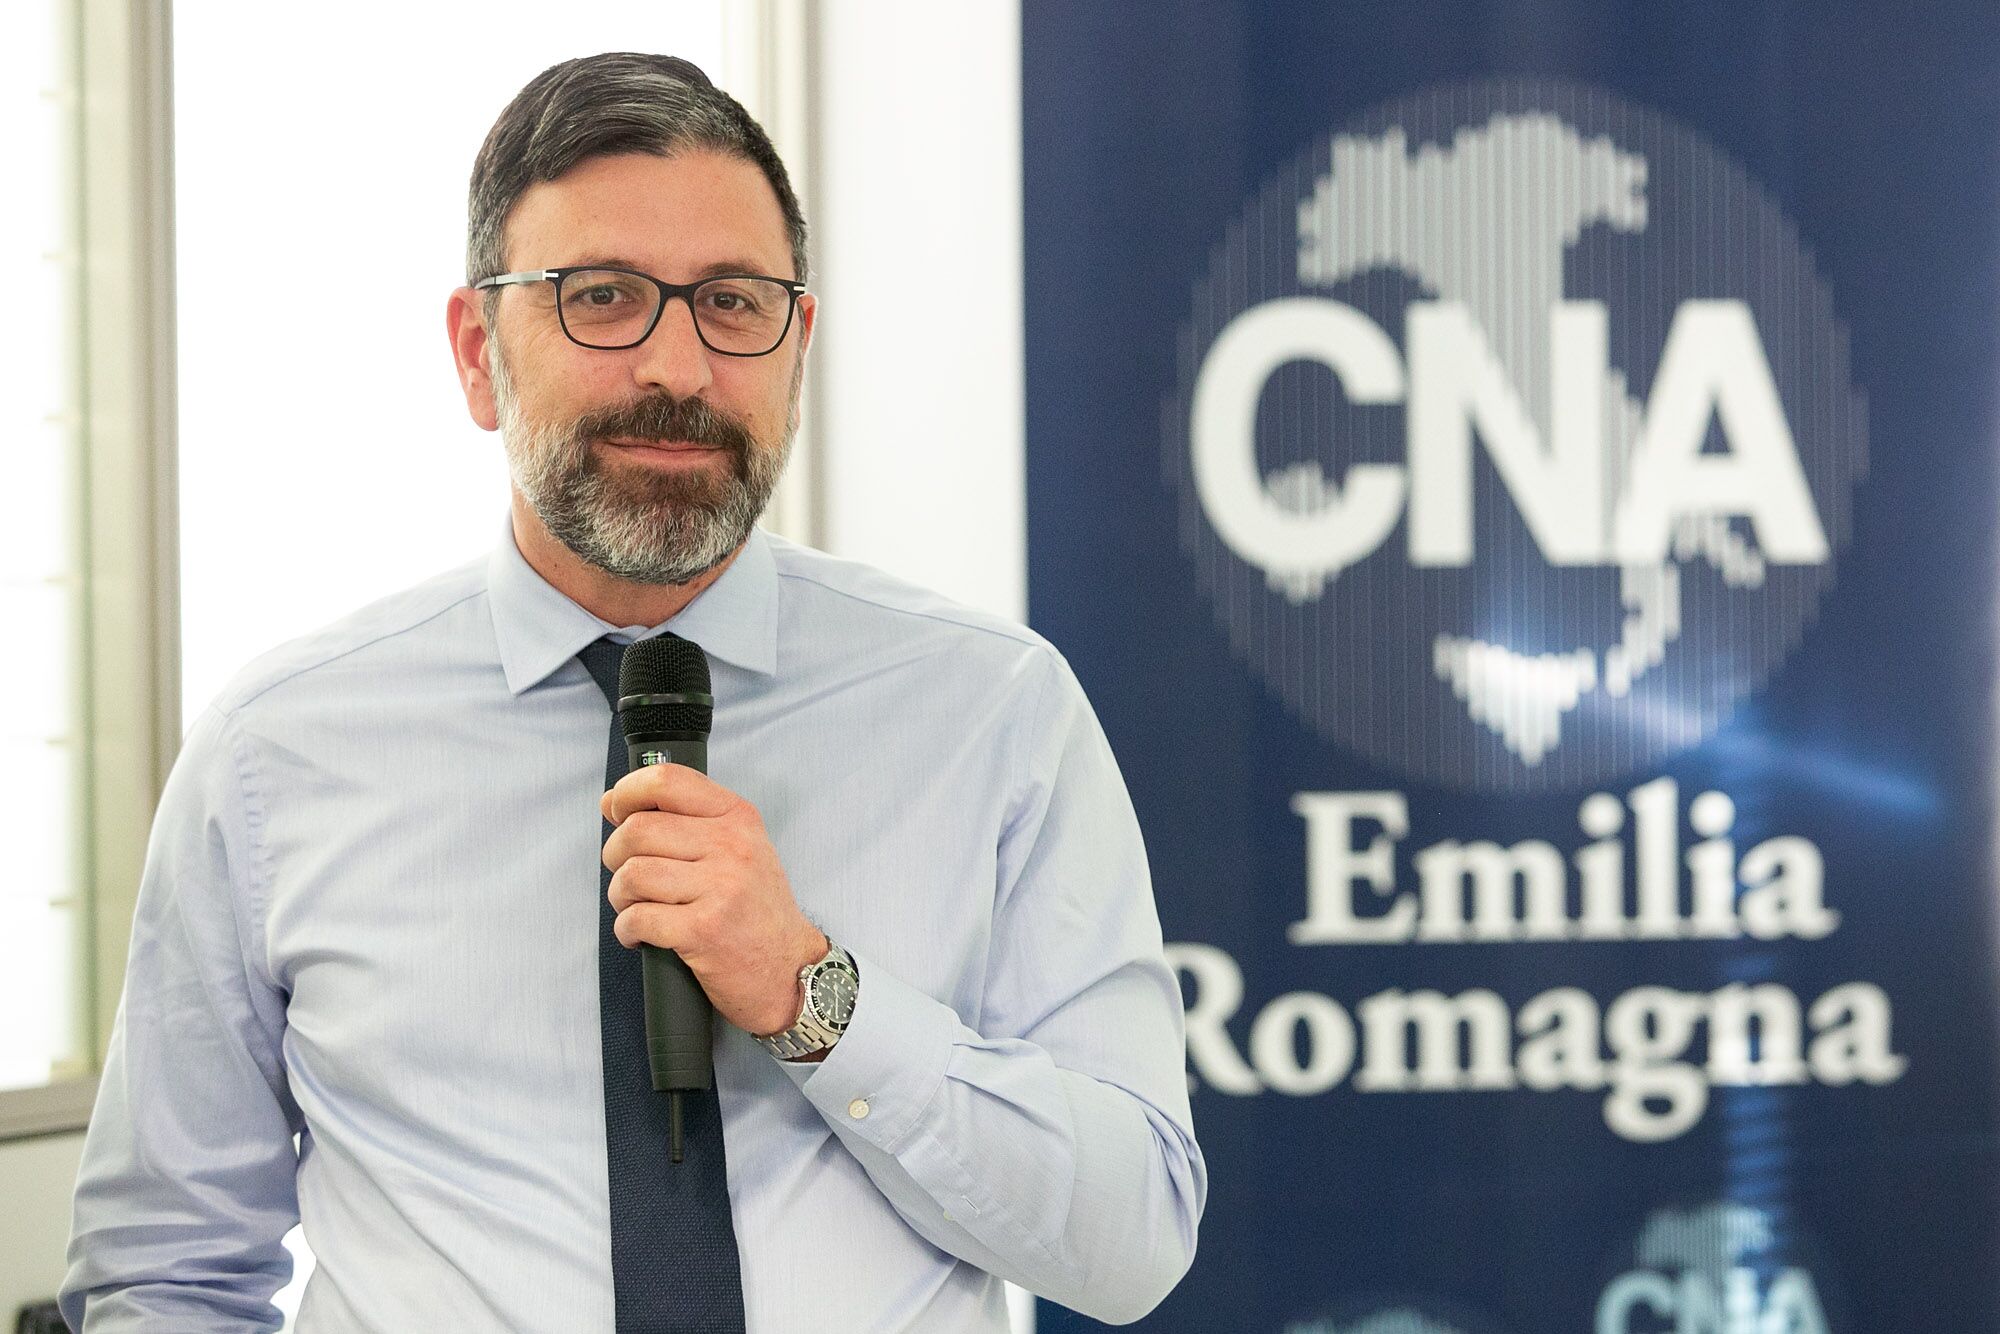 Covid-19, in Emilia Romagna la Confartigianato e la CNA ottengono dalla Regione il sostegno per riaprire parrucchieri ed estetisti